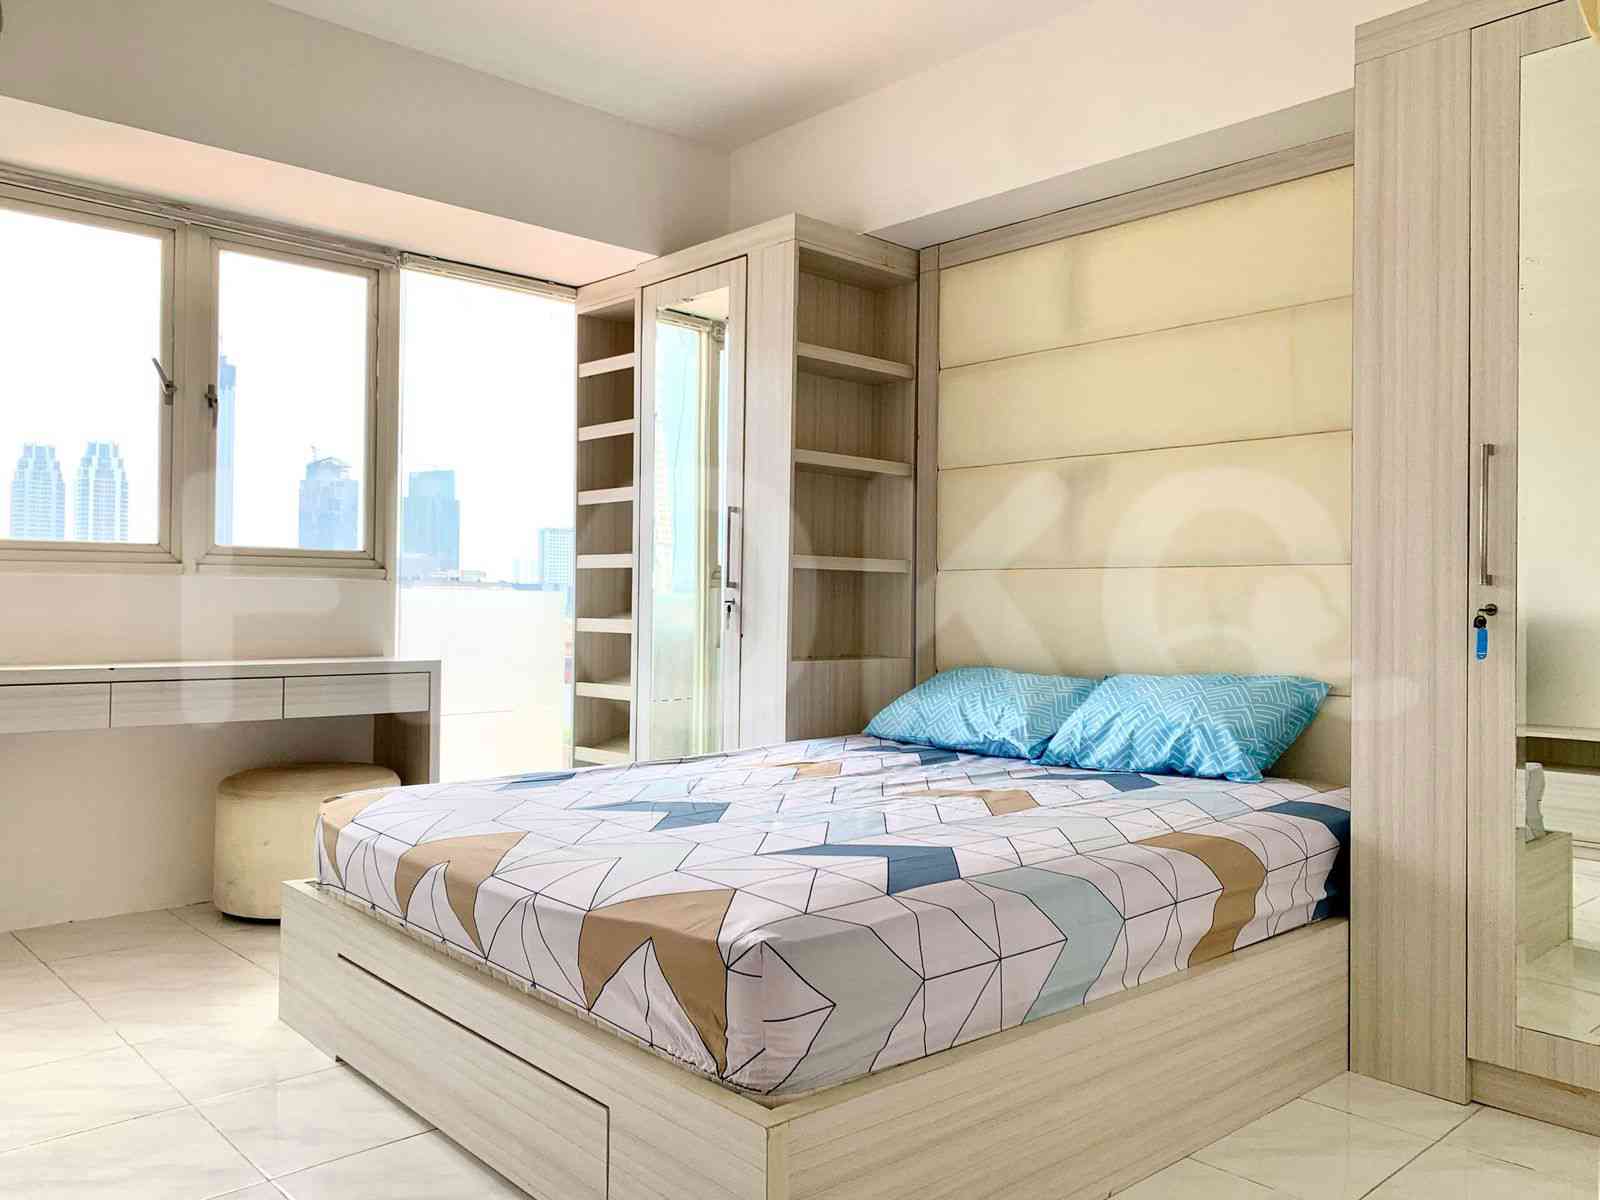 Tipe 1 Kamar Tidur di Lantai 2 untuk disewakan di Sahid Metropolitan Residence - fku164 1